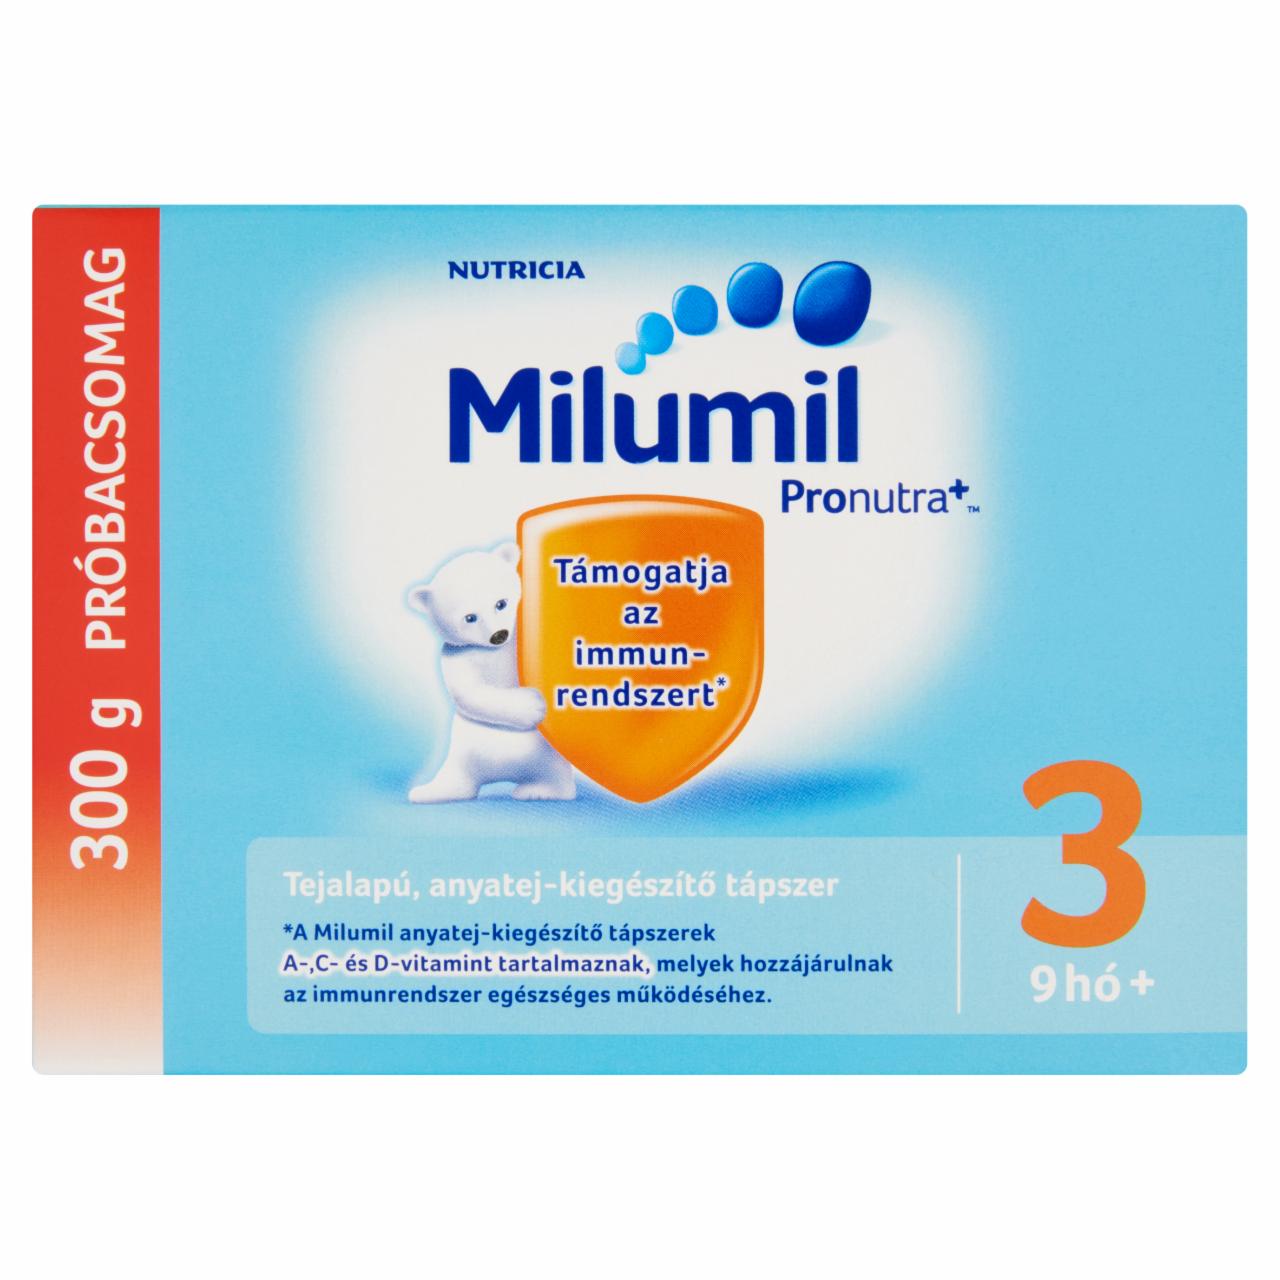 Képek - Milumil 3 anyatej-kiegészítő tápszer próbacsomag 9 hó+ 300 g